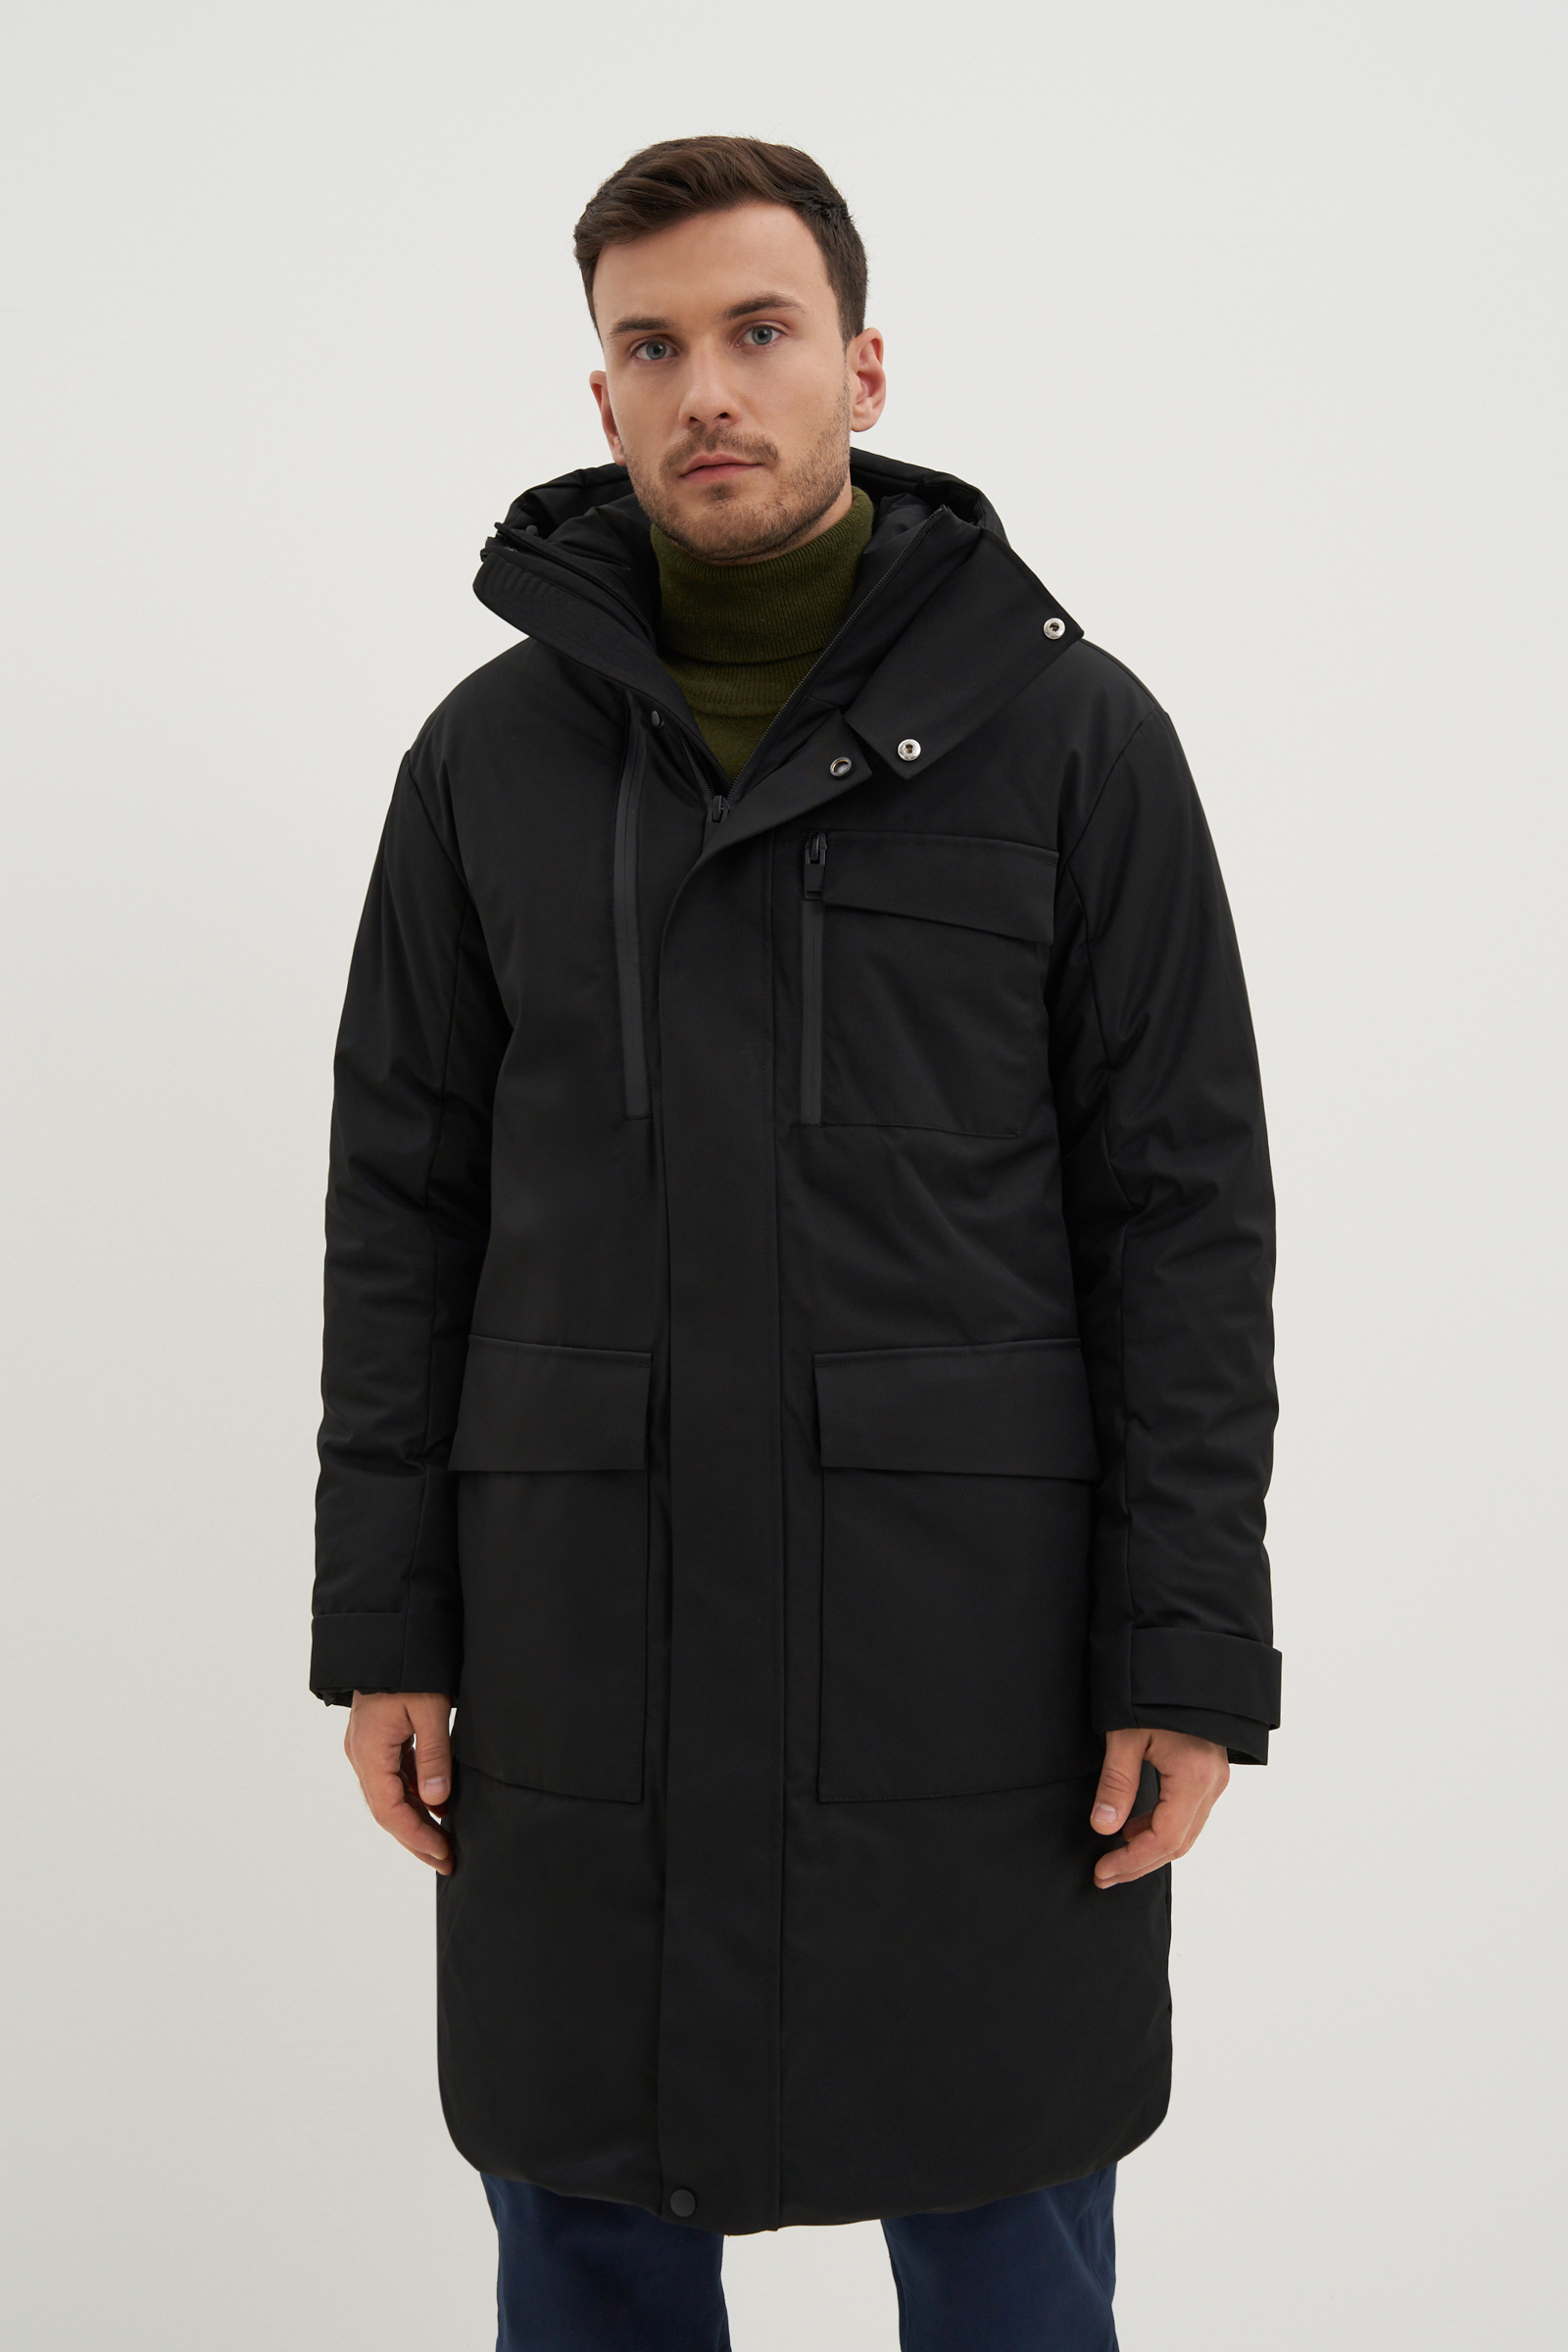 Зимняя куртка мужская Finn Flare FWB61029 черная S